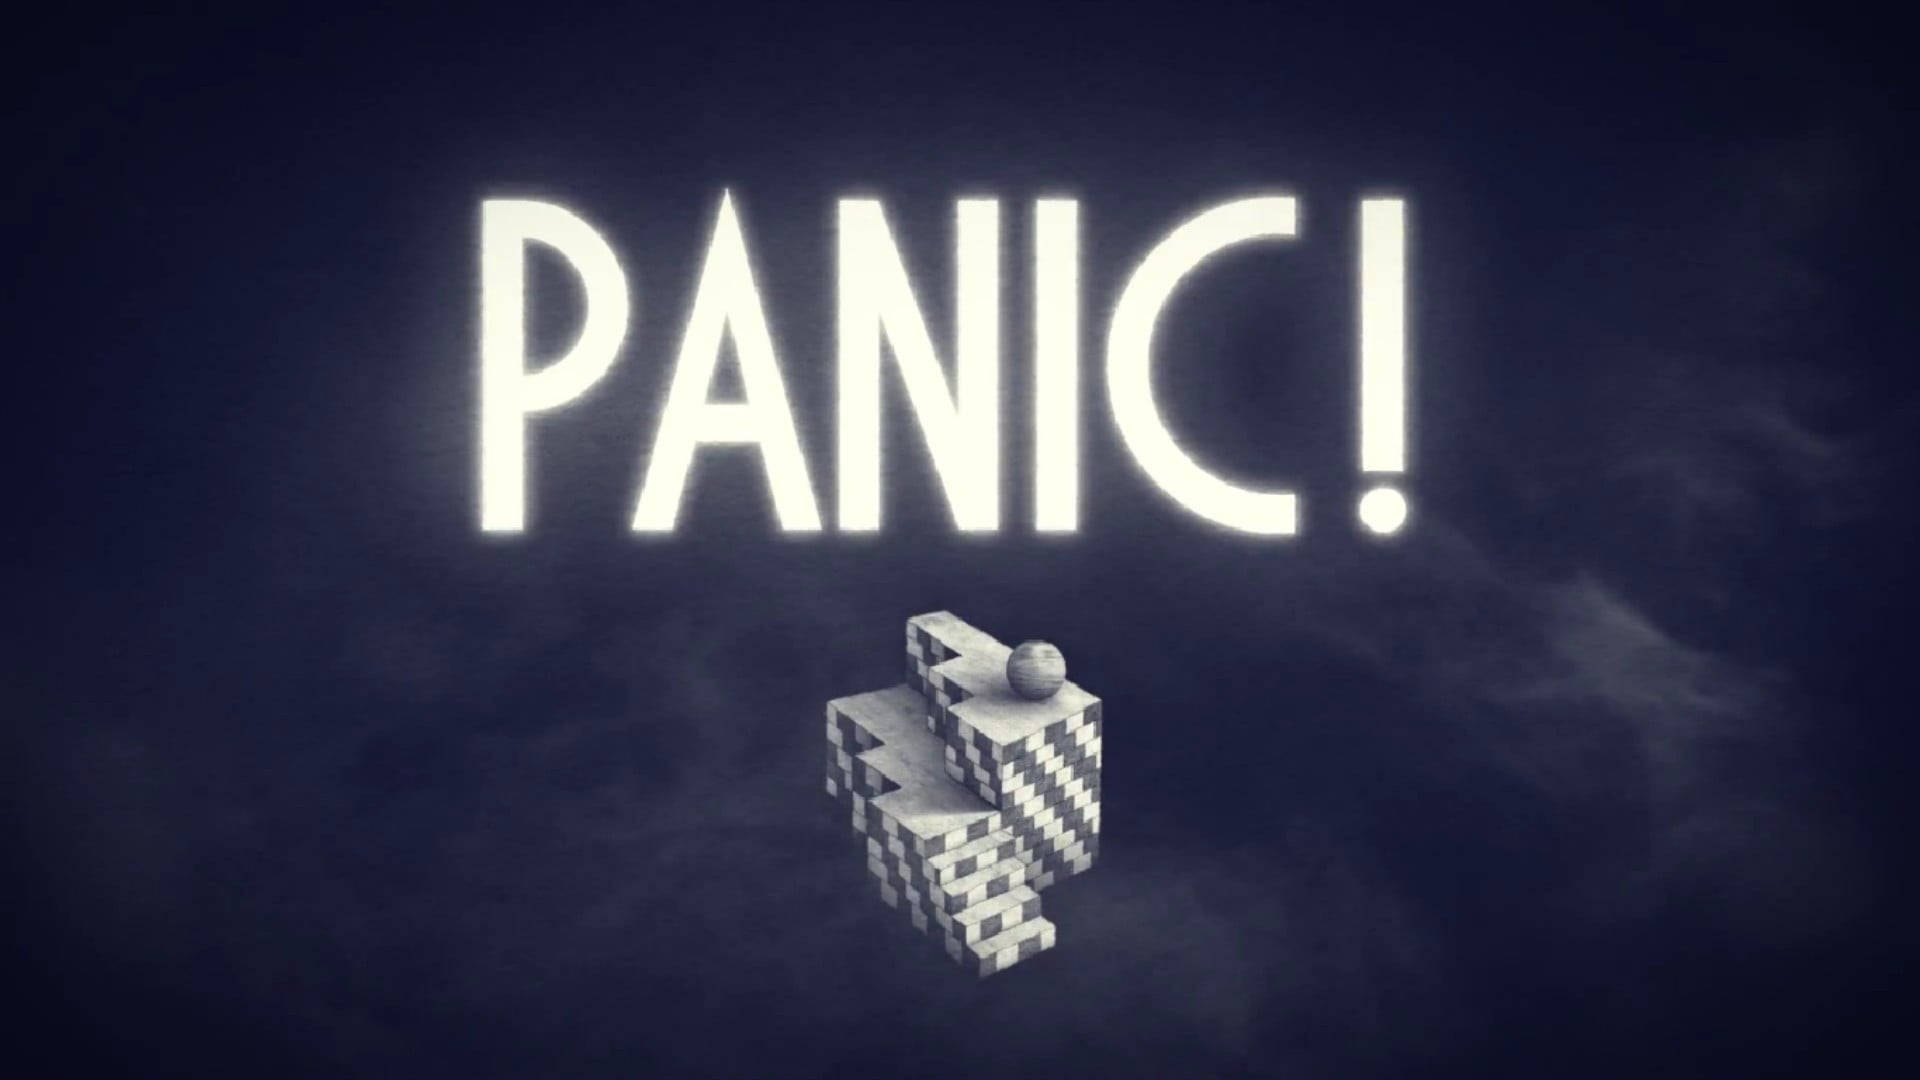 Caravanpalace Panic! Videoclip De Música. Fondo de pantalla